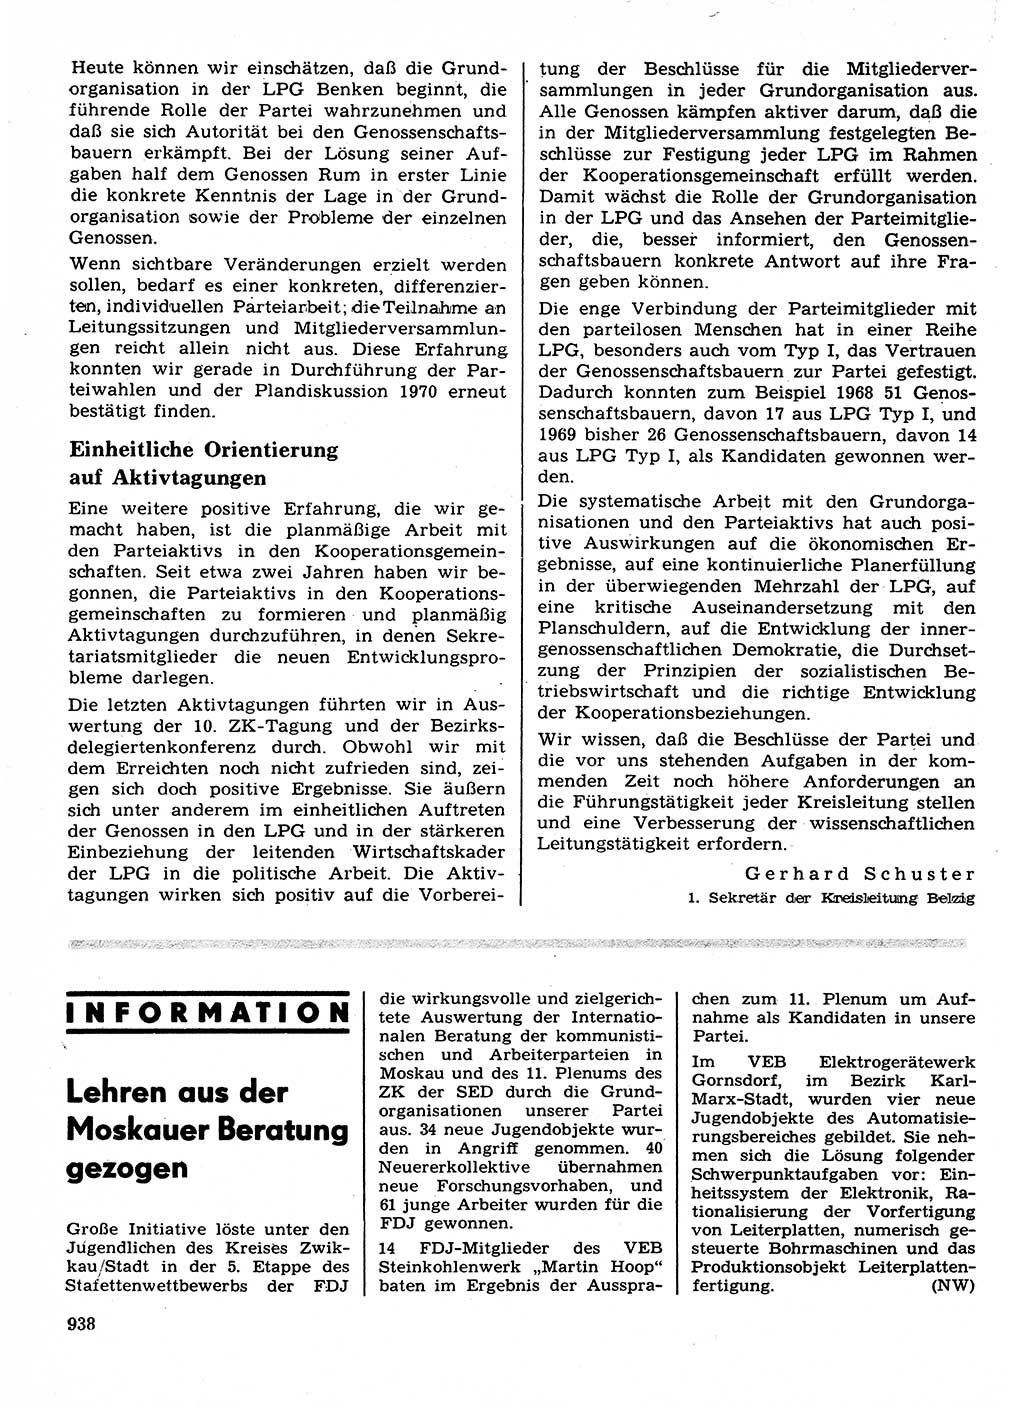 Neuer Weg (NW), Organ des Zentralkomitees (ZK) der SED (Sozialistische Einheitspartei Deutschlands) für Fragen des Parteilebens, 24. Jahrgang [Deutsche Demokratische Republik (DDR)] 1969, Seite 938 (NW ZK SED DDR 1969, S. 938)